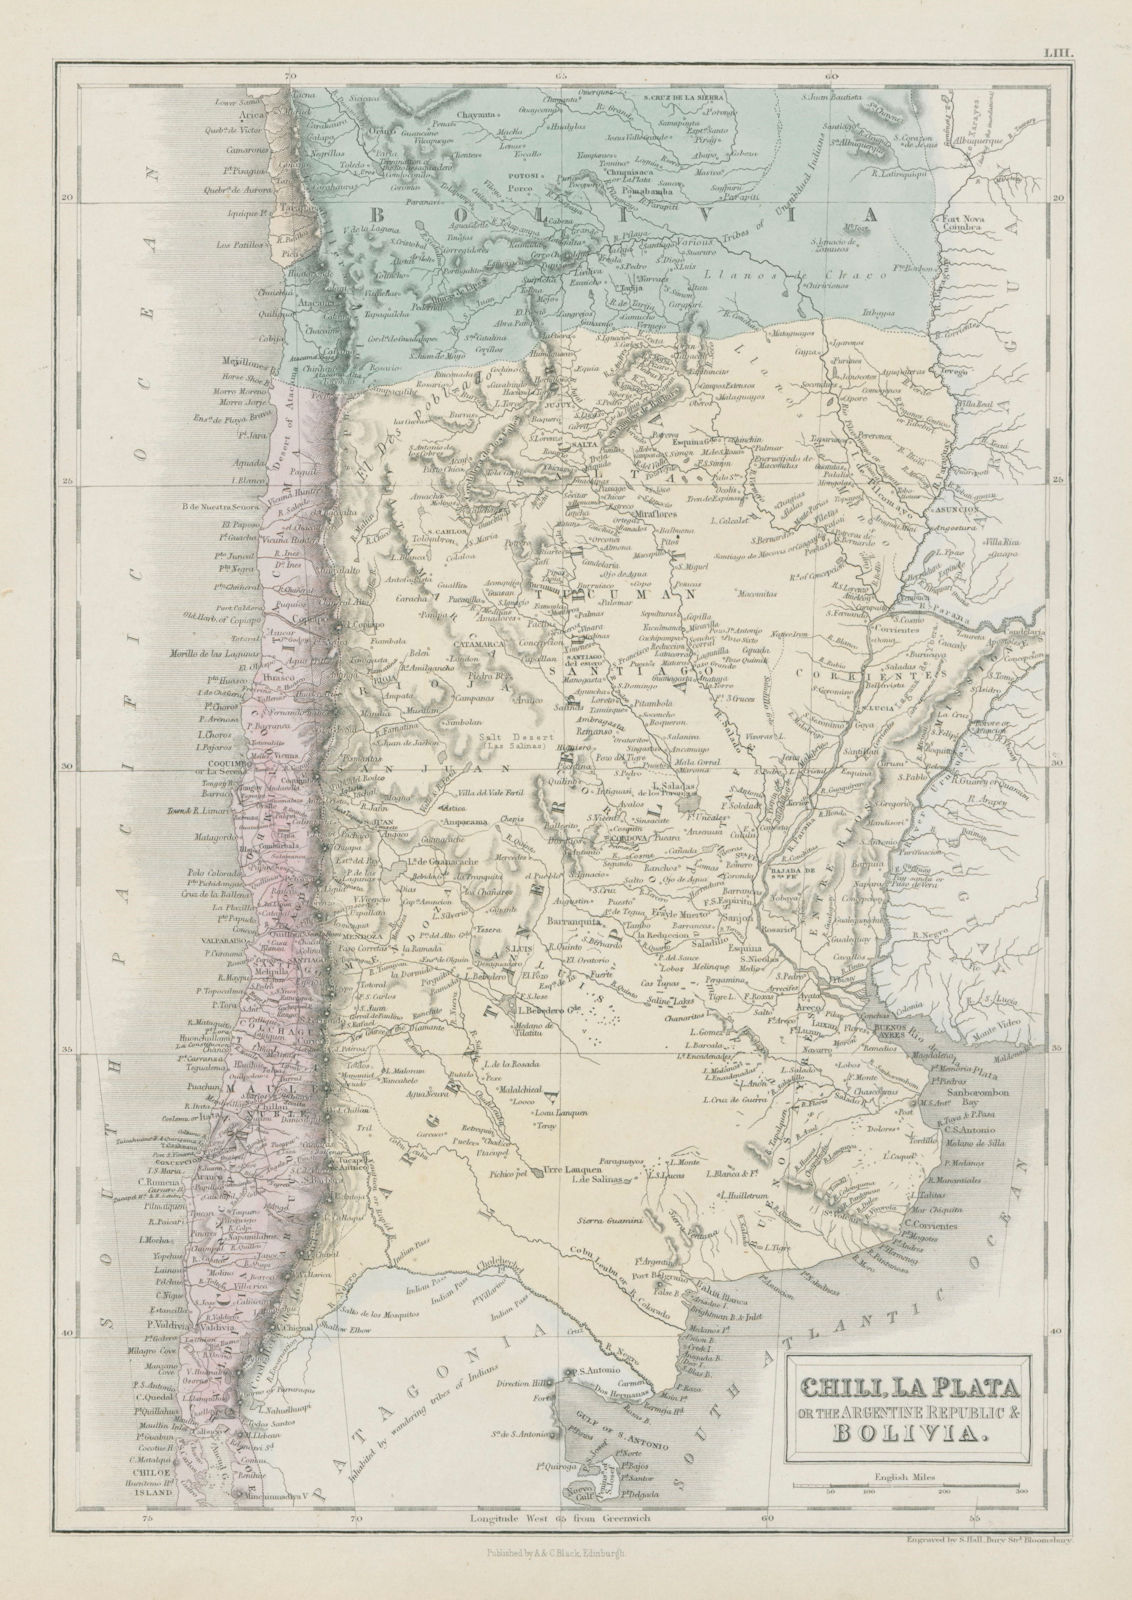 Chili La Plata Argentine Rep. Argentina Bolivia w/Litoral. SIDNEY HALL 1856 map